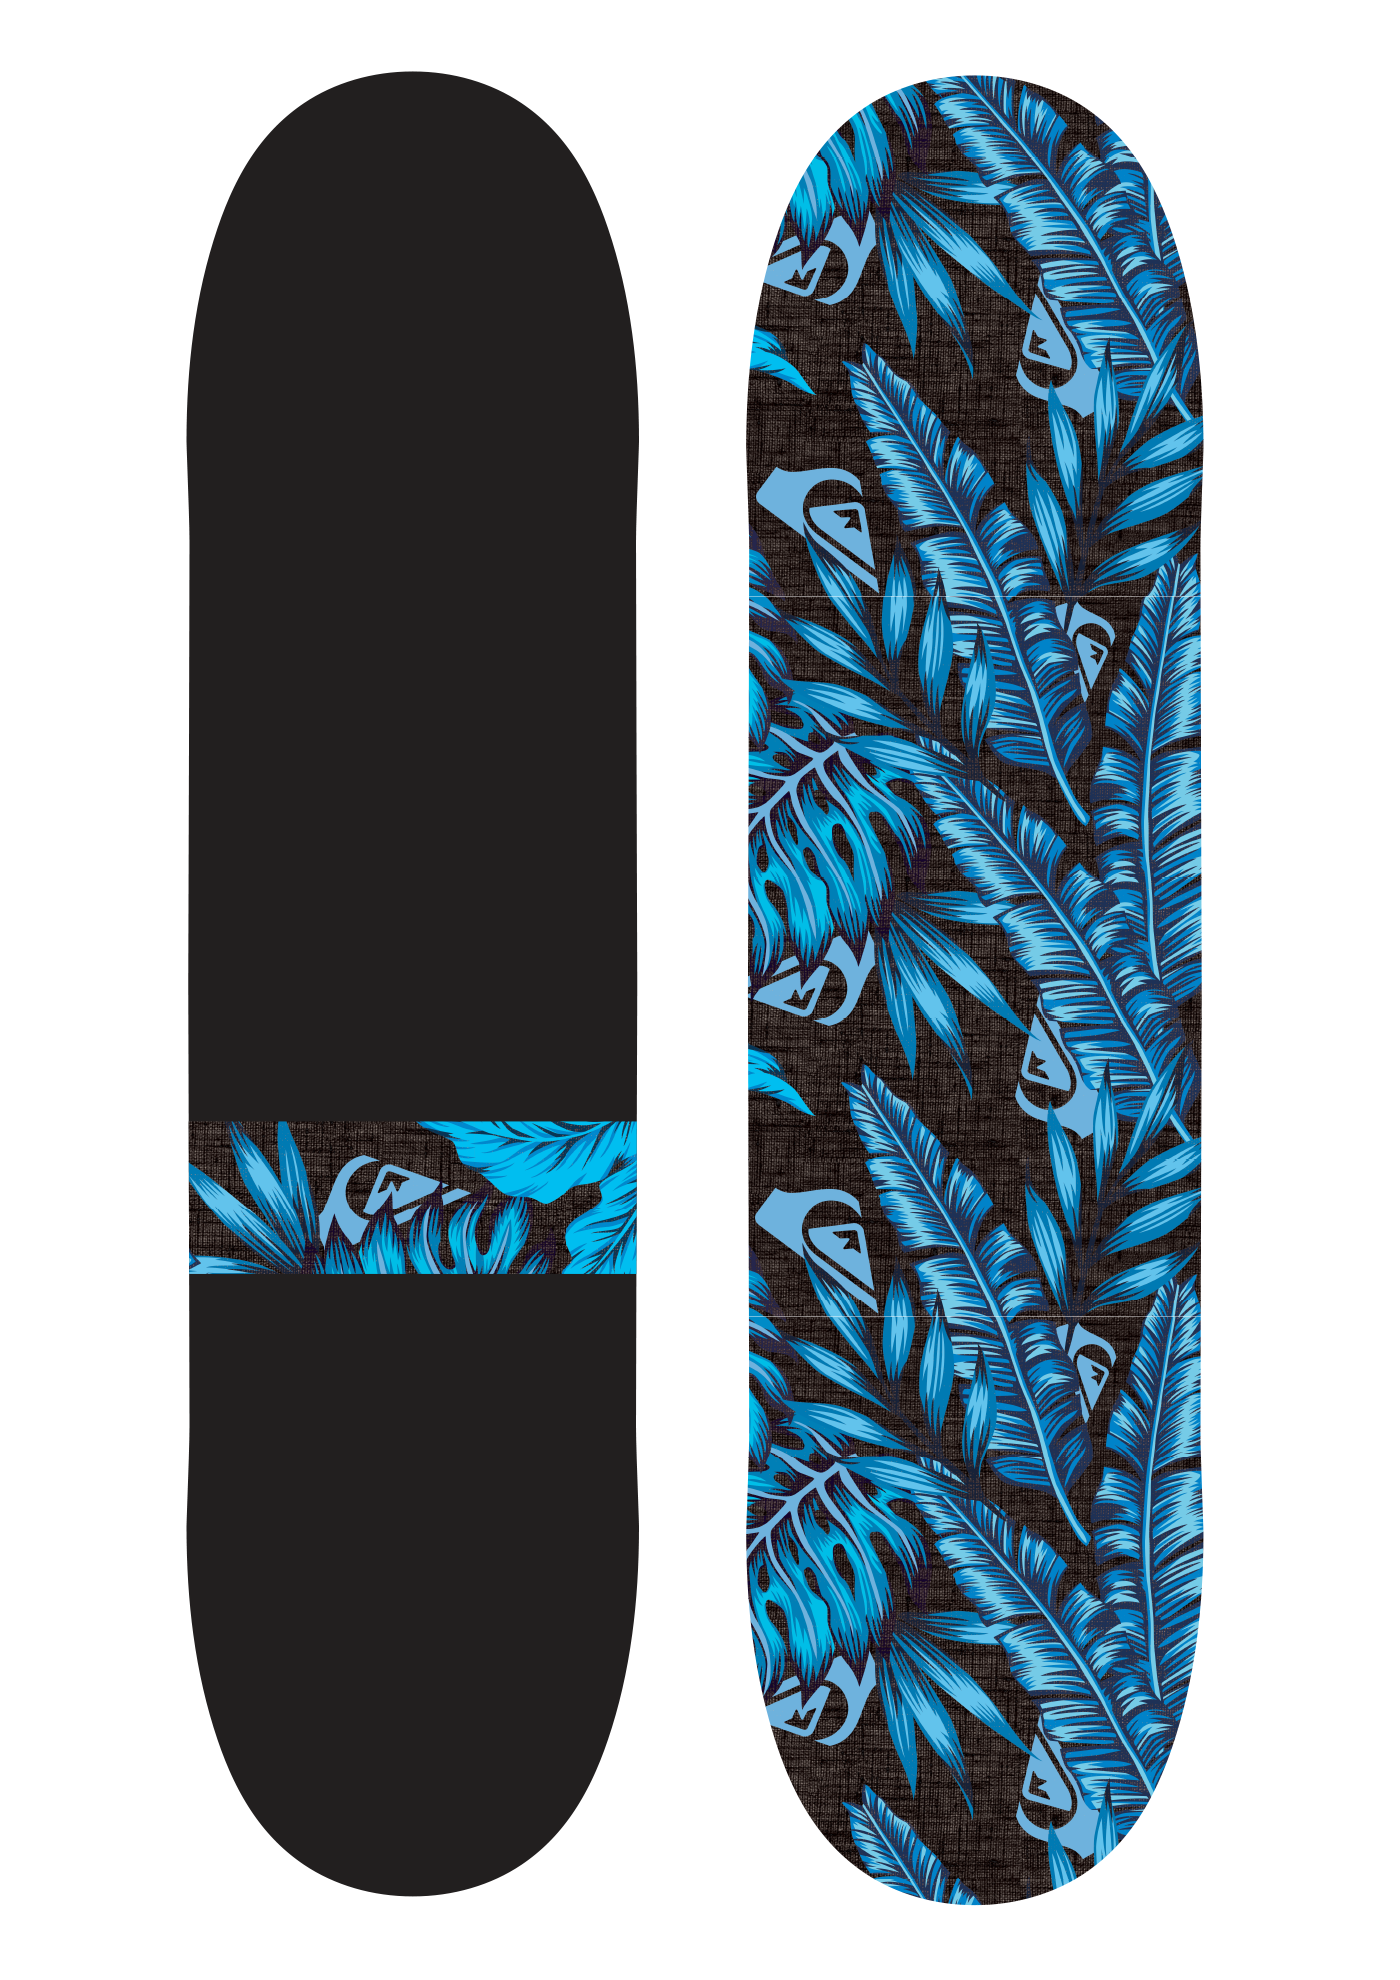 graphic design art skateboard branding  product Surf skate